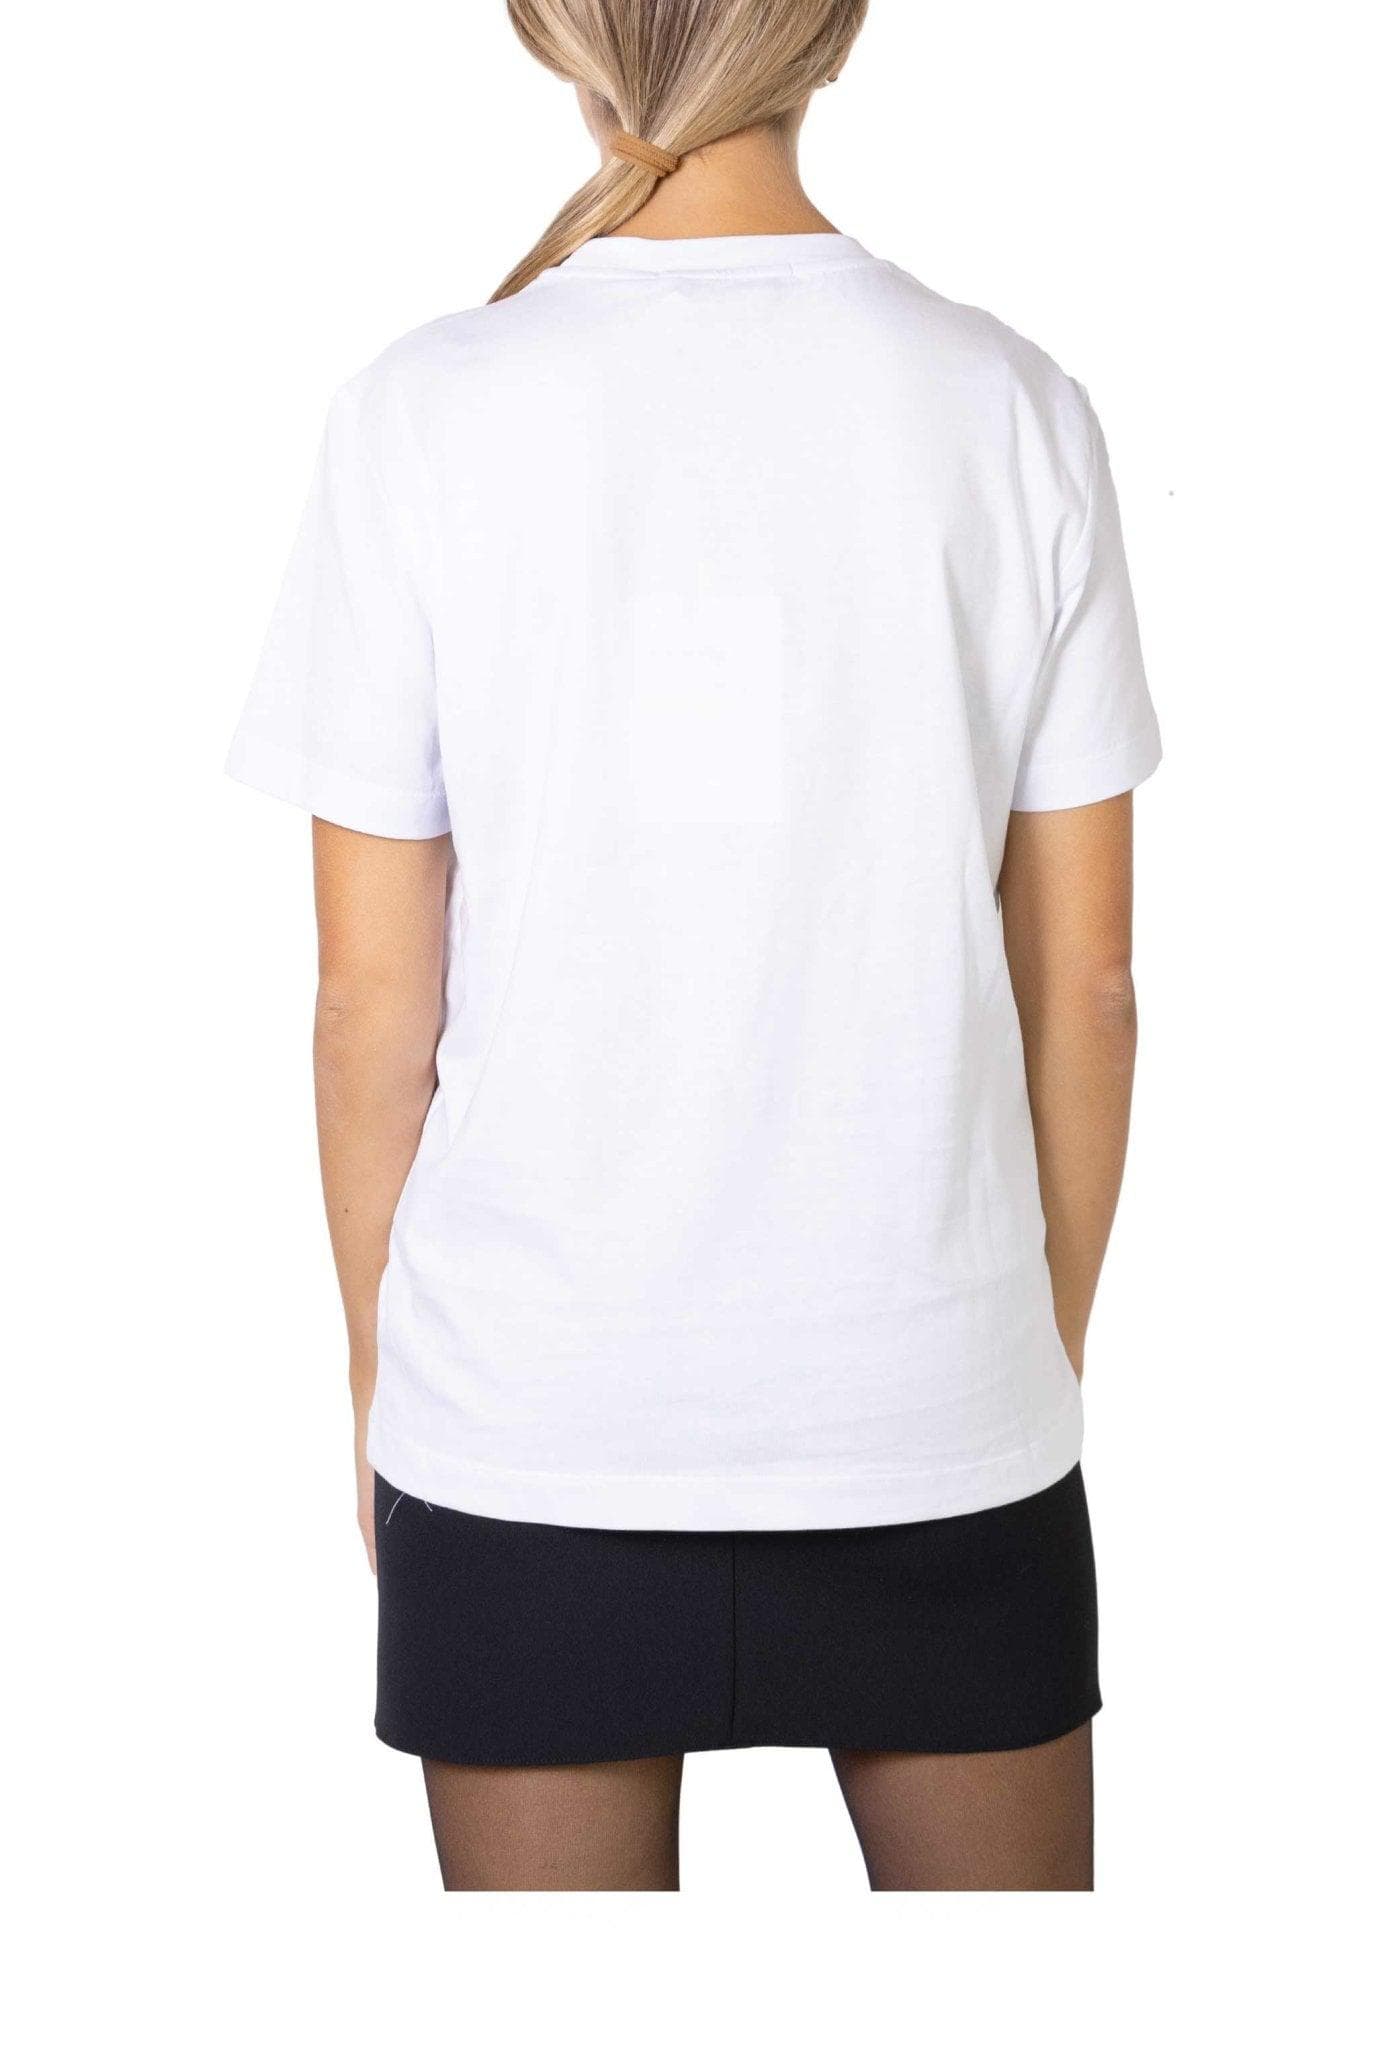 T-shirt bianca con micro logo- MSGM -Giorgioquinto